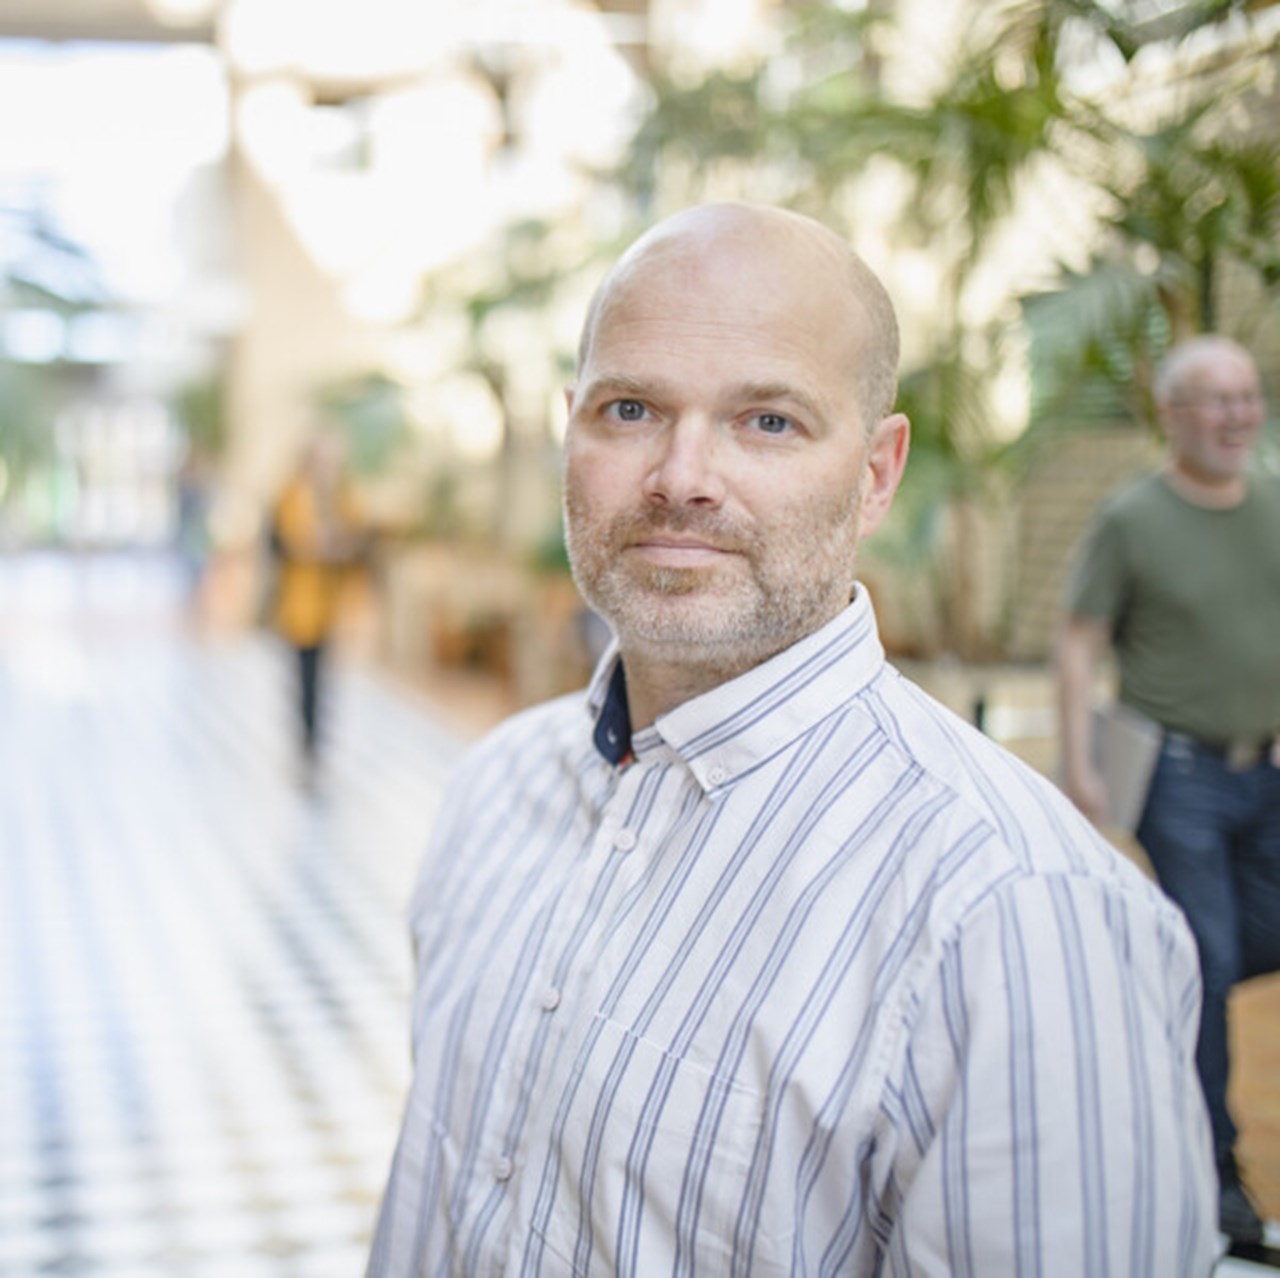 Porträttbild på Paul Davis, anknuten som universitetslektor vid Institutionen för psykologi, Umeå universitet.